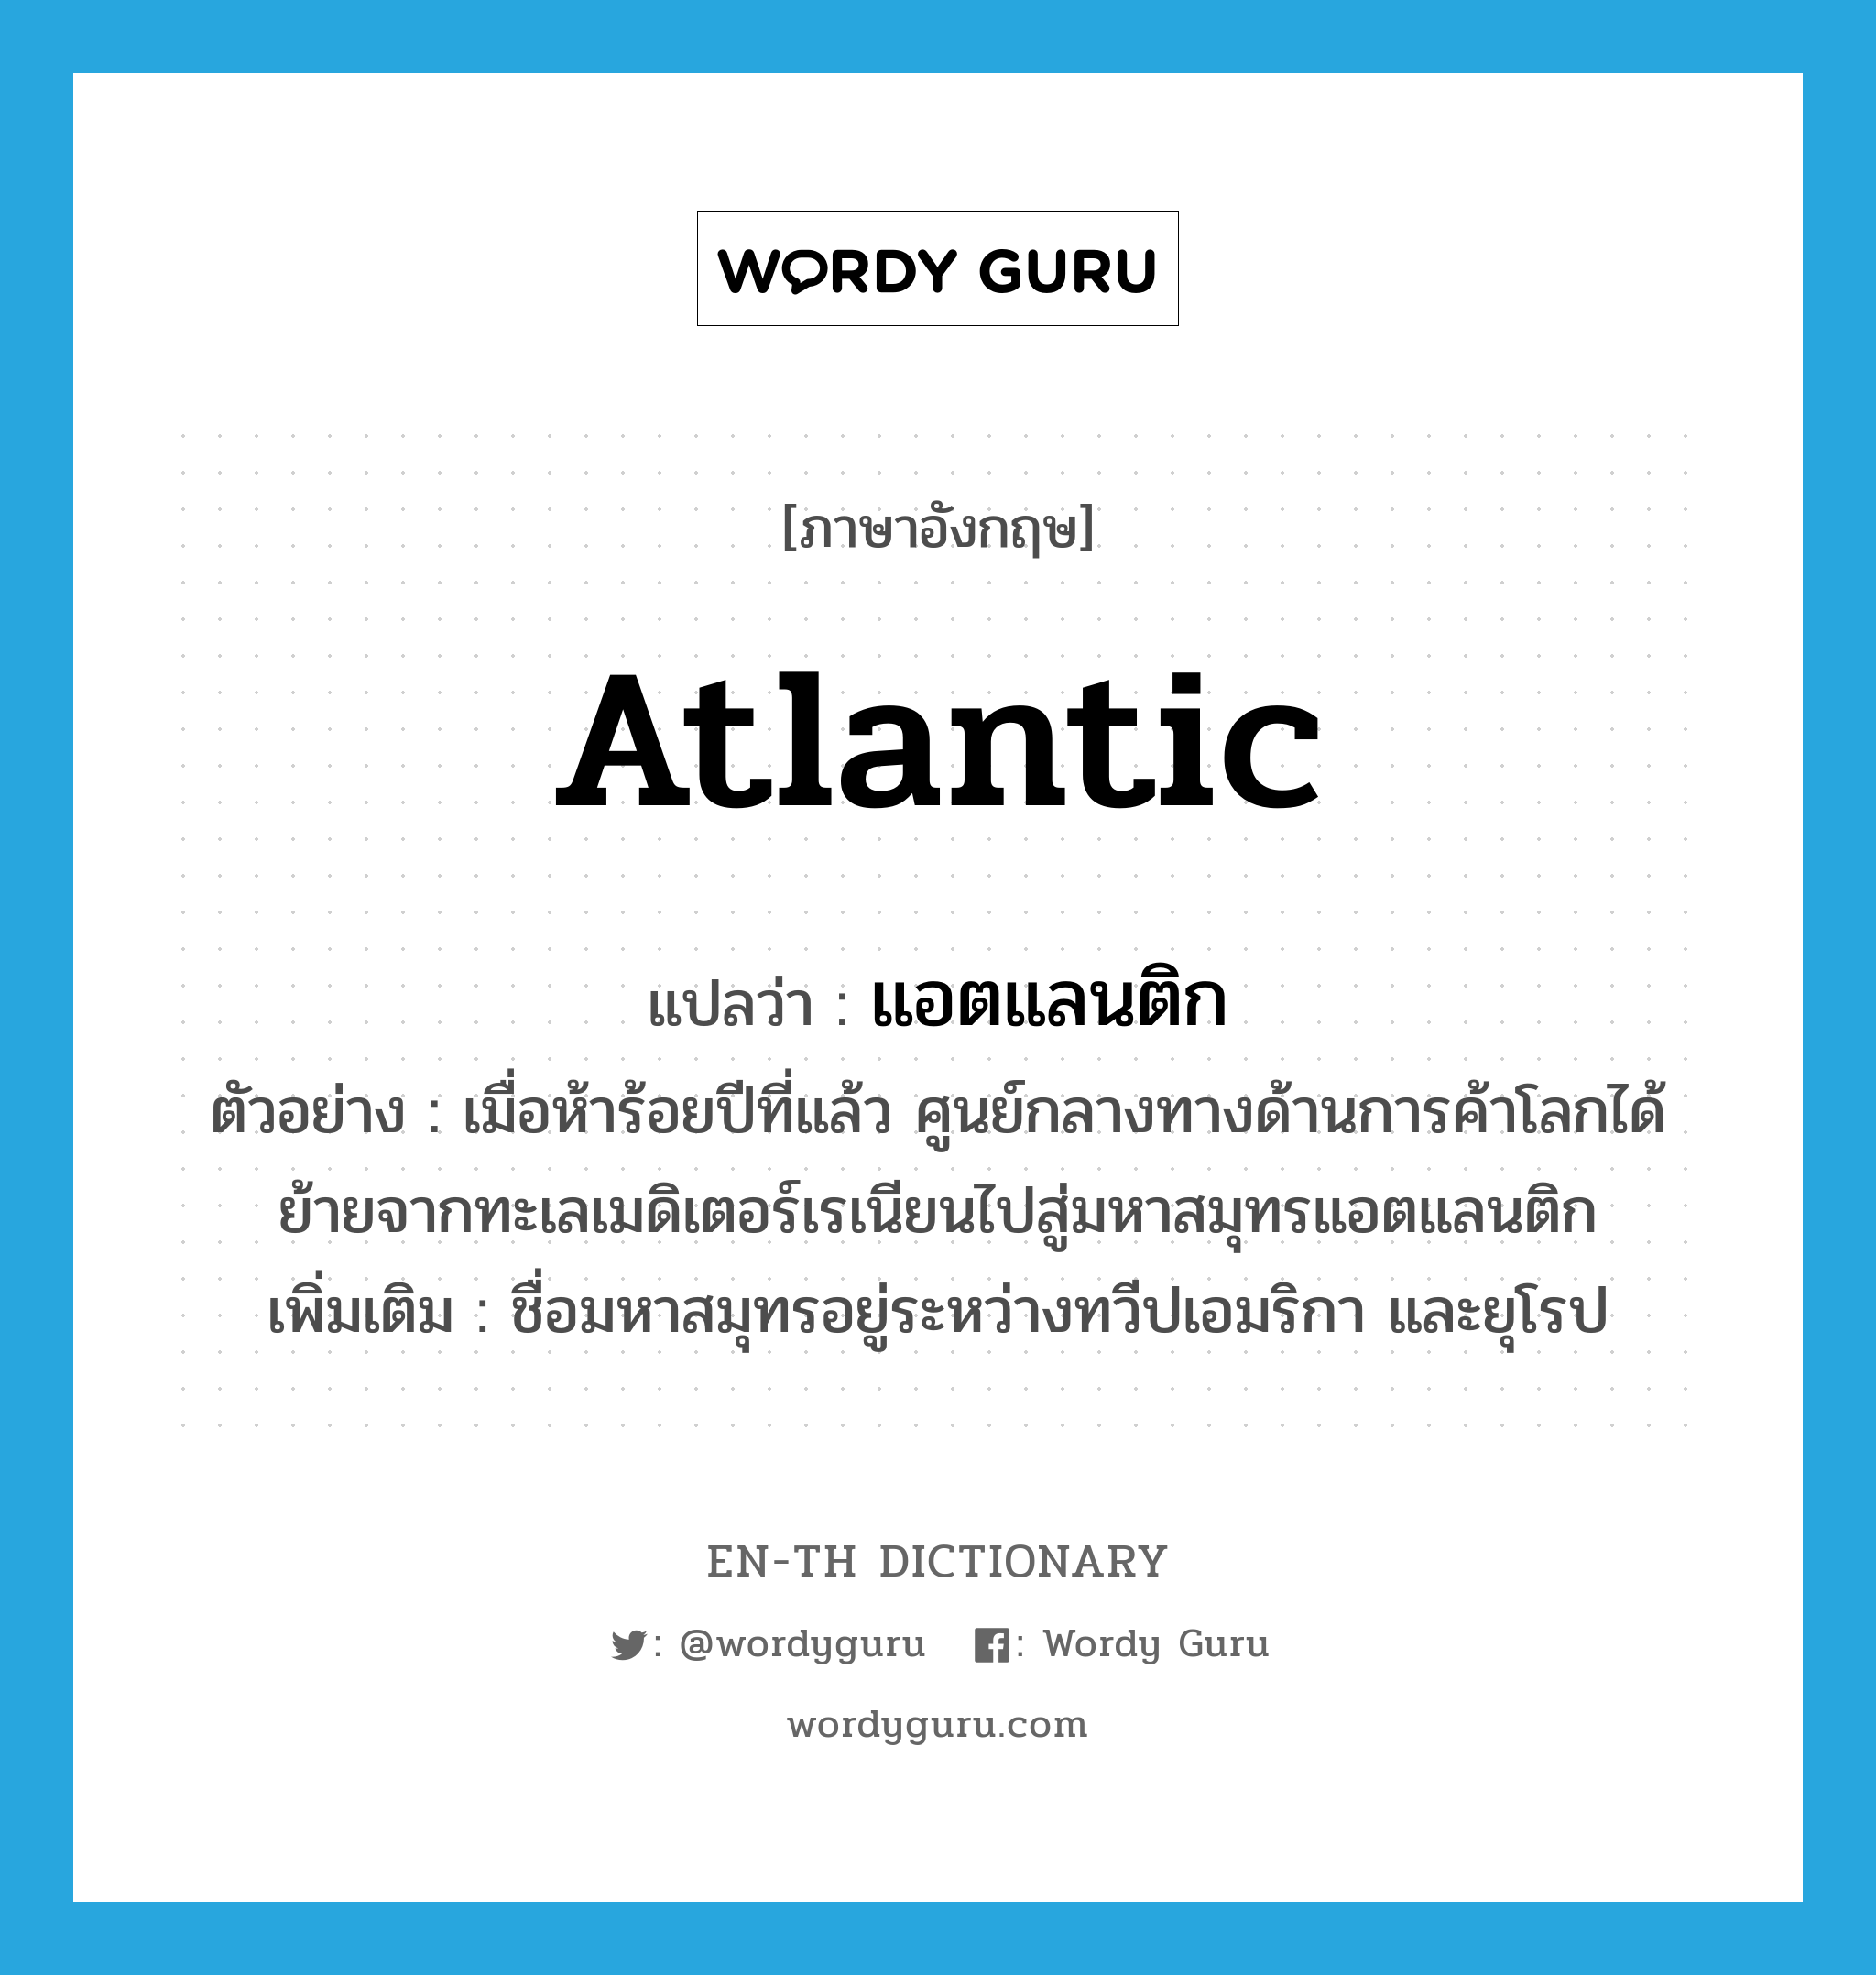 Atlantic แปลว่า?, คำศัพท์ภาษาอังกฤษ Atlantic แปลว่า แอตแลนติก ประเภท N ตัวอย่าง เมื่อห้าร้อยปีที่แล้ว ศูนย์กลางทางด้านการค้าโลกได้ย้ายจากทะเลเมดิเตอร์เรเนียนไปสู่มหาสมุทรแอตแลนติก เพิ่มเติม ชื่อมหาสมุทรอยู่ระหว่างทวีปเอมริกา และยุโรป หมวด N